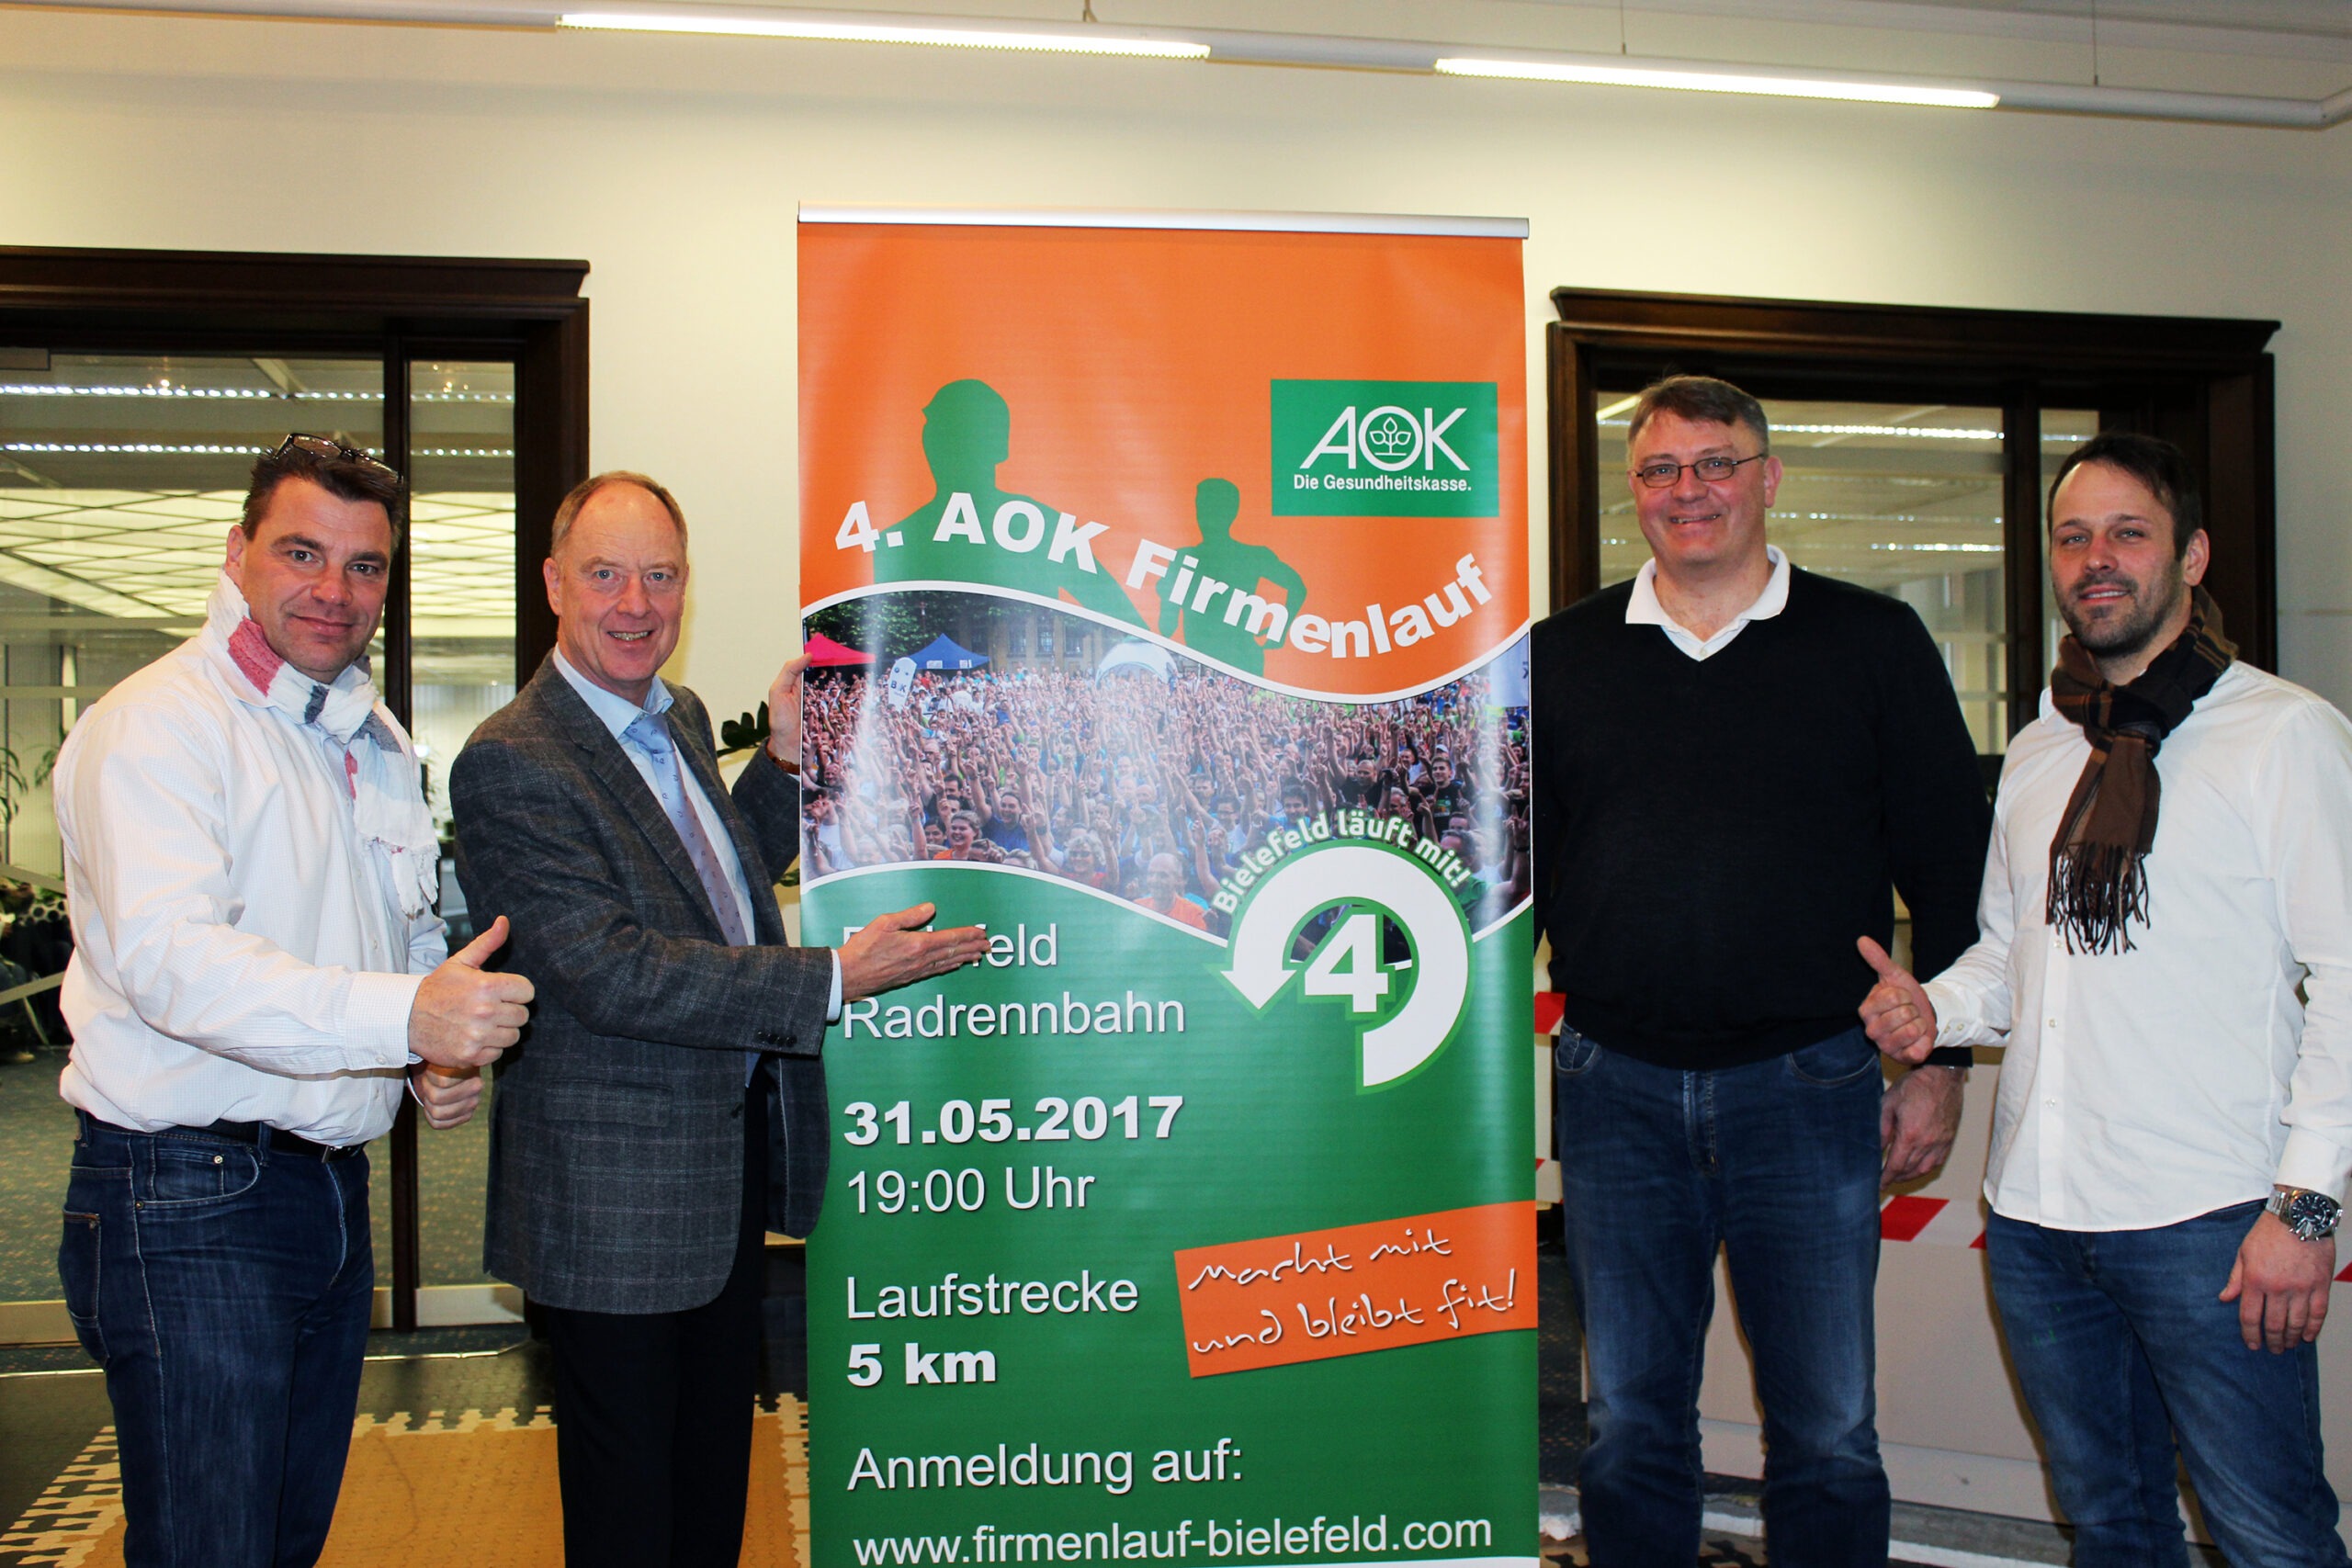 AOK-Firmenlauf Bielefeld geht in die vierte Runde